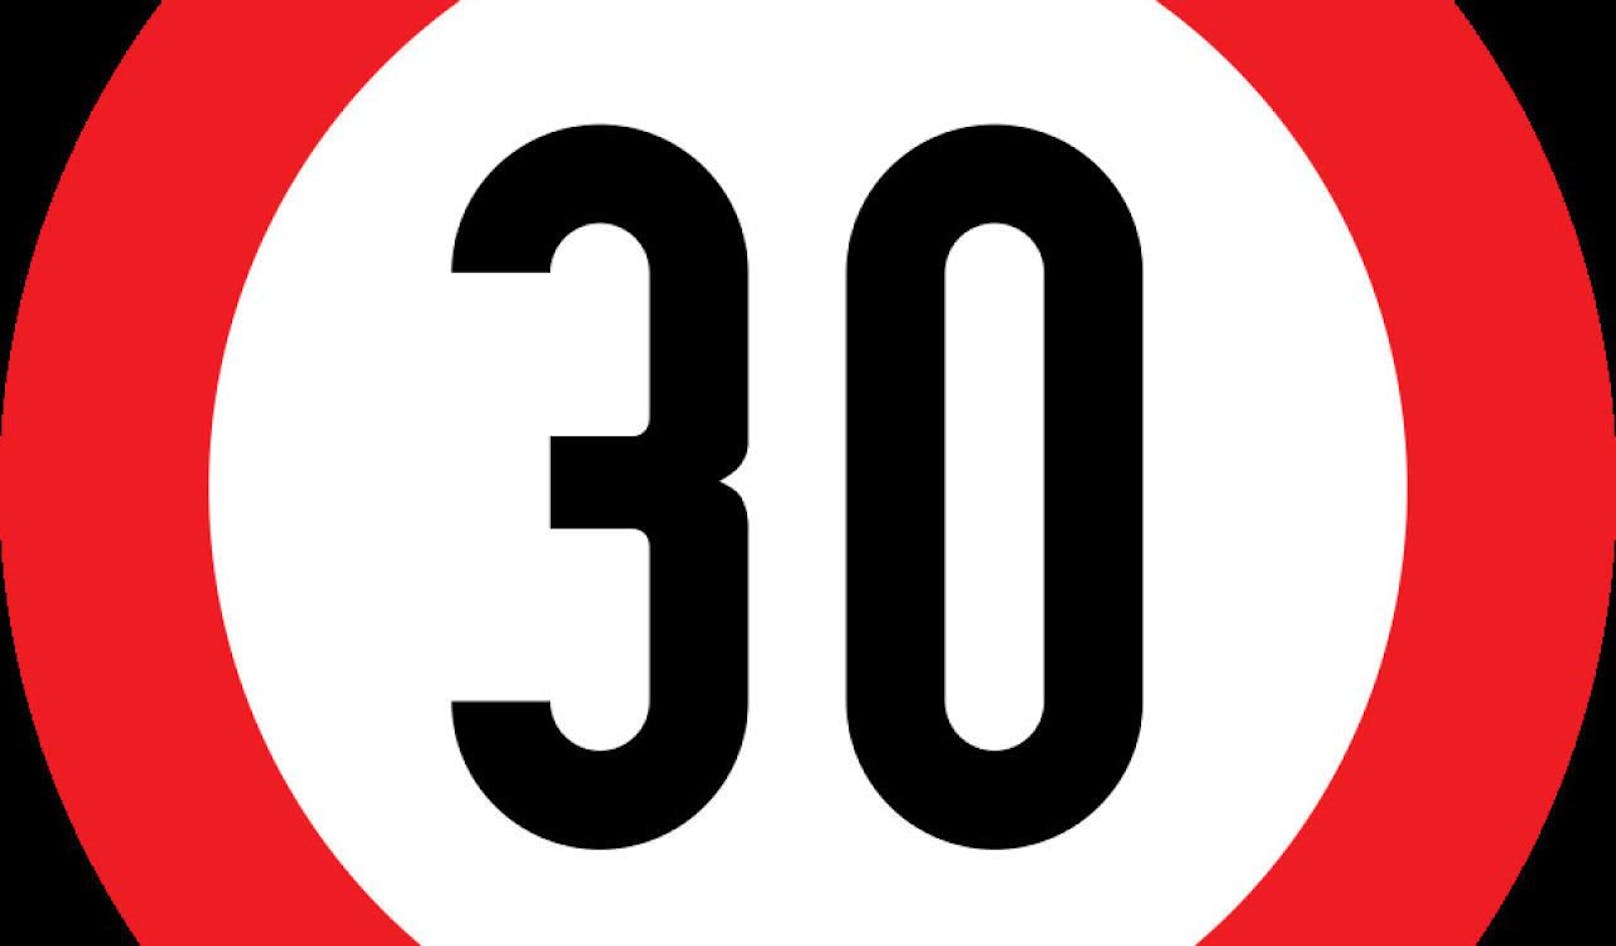 Der Verkehrsclub Österreich (VCÖ) fordert nun Tempo 30 als neue Regelgeschwindigkeit im Ortsgebiet.